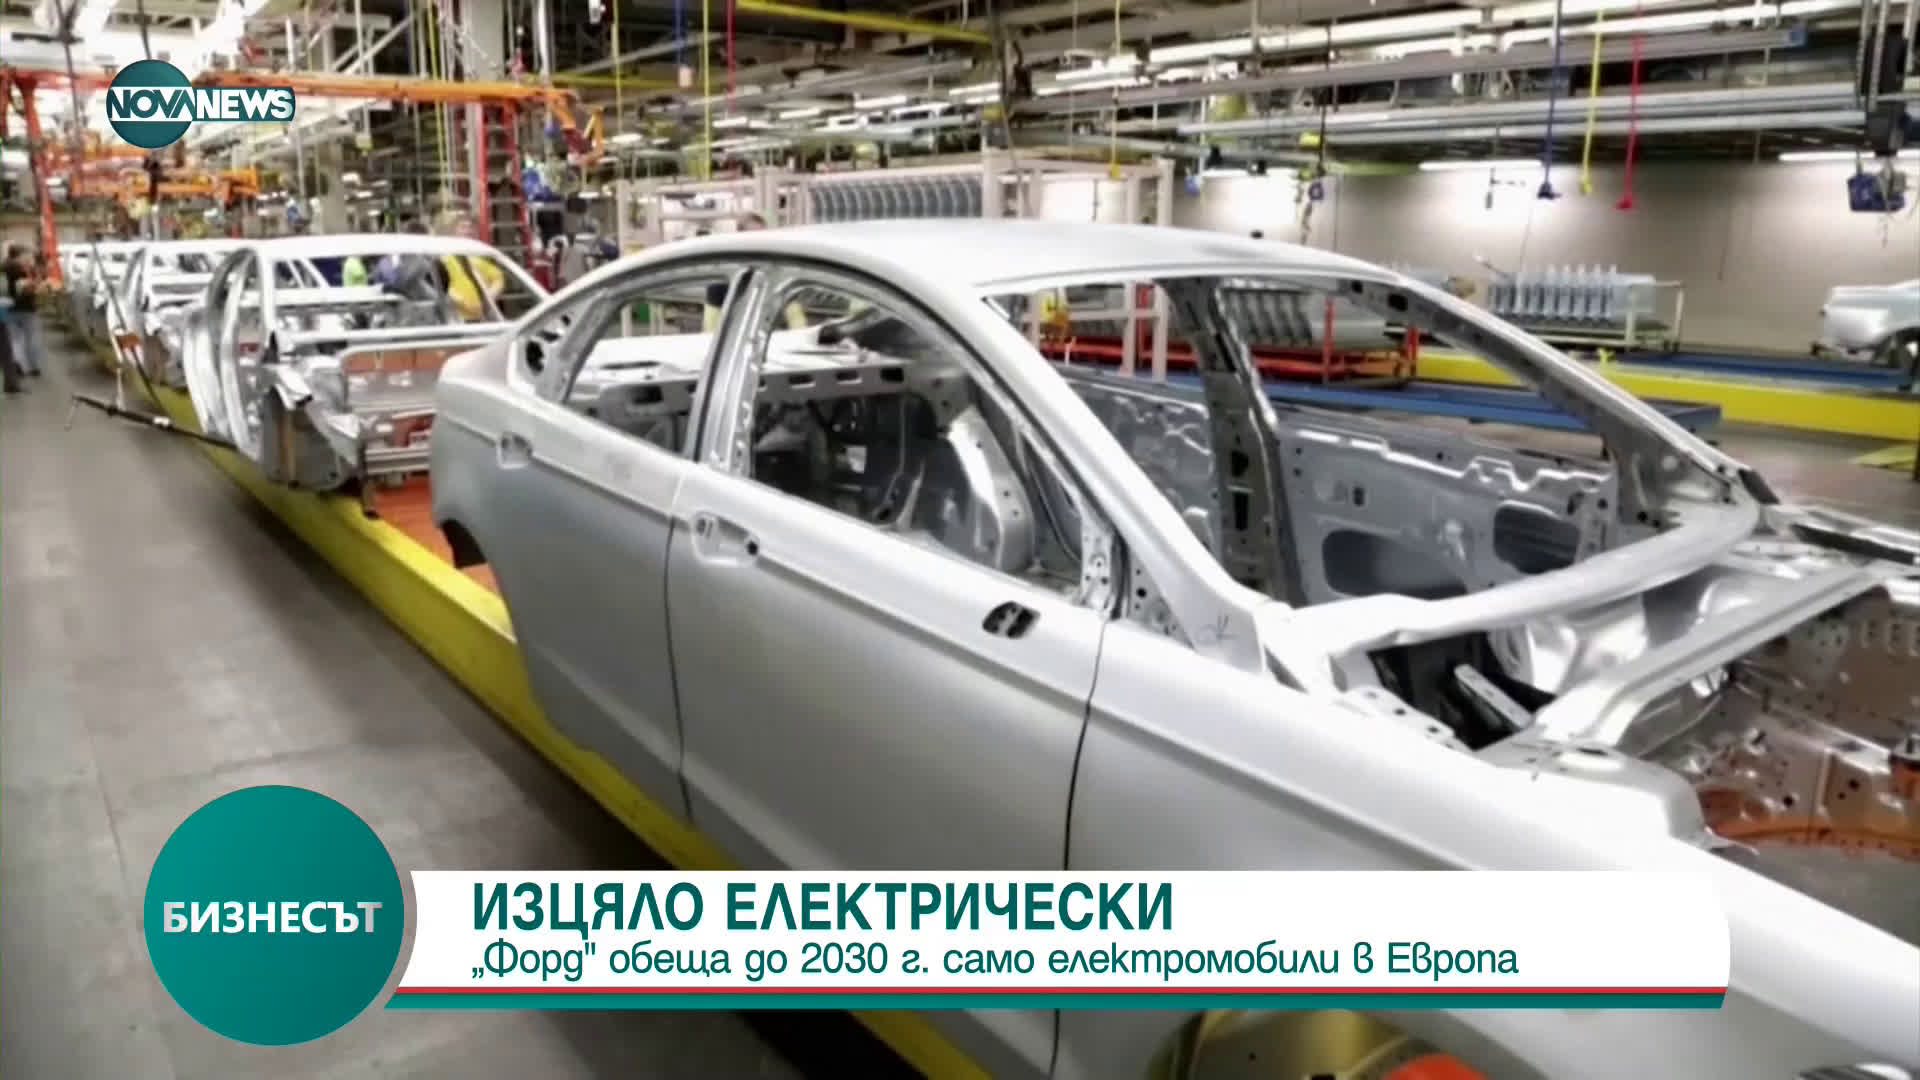 Ford ще продава само електромобили в Европа до 2030 г.